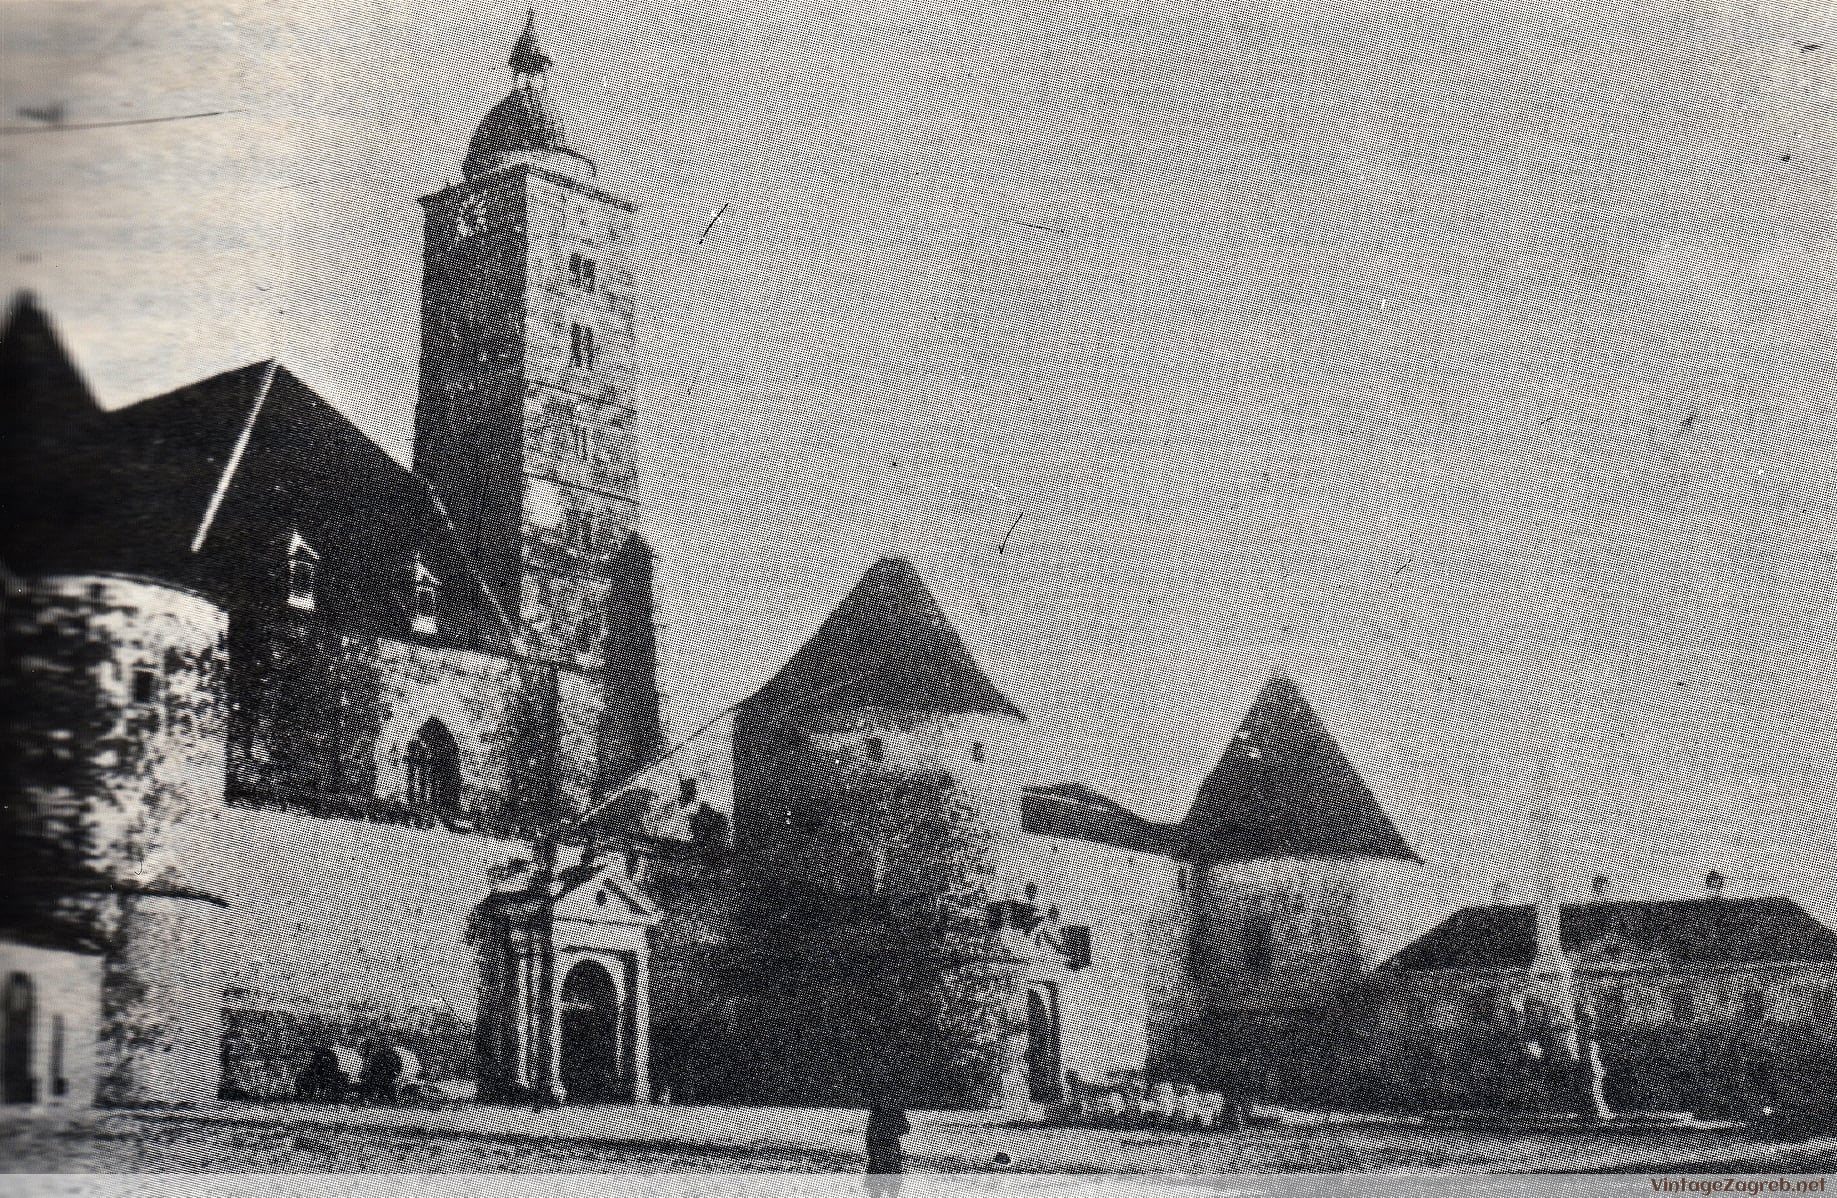 Katedrala sa zapadnim dijelom tvrđe — 1878